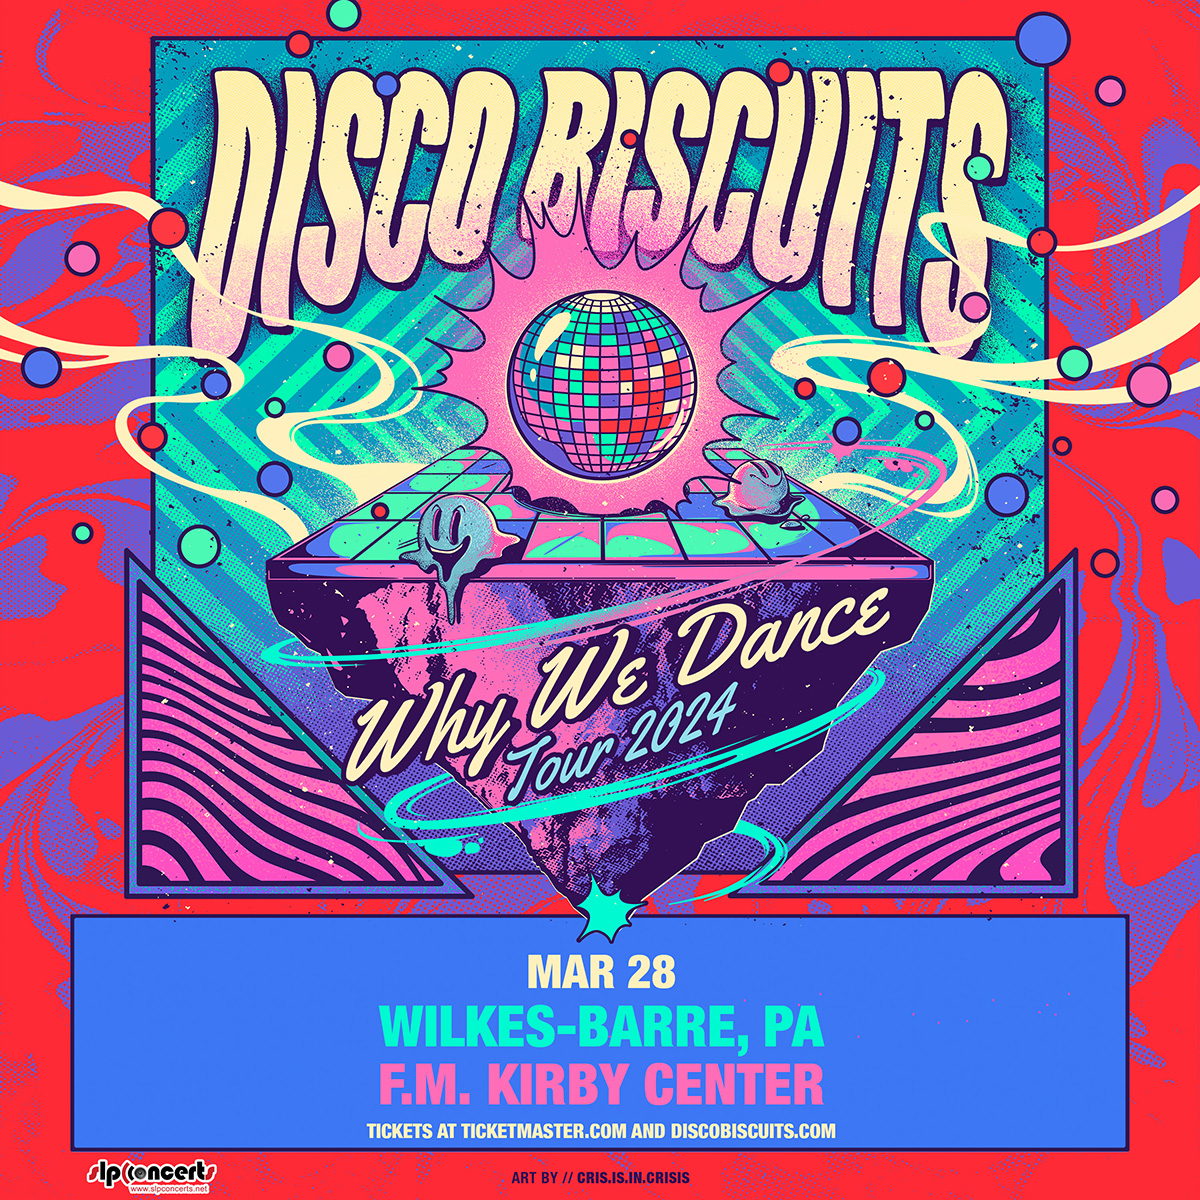 Disco Biscuits flyer